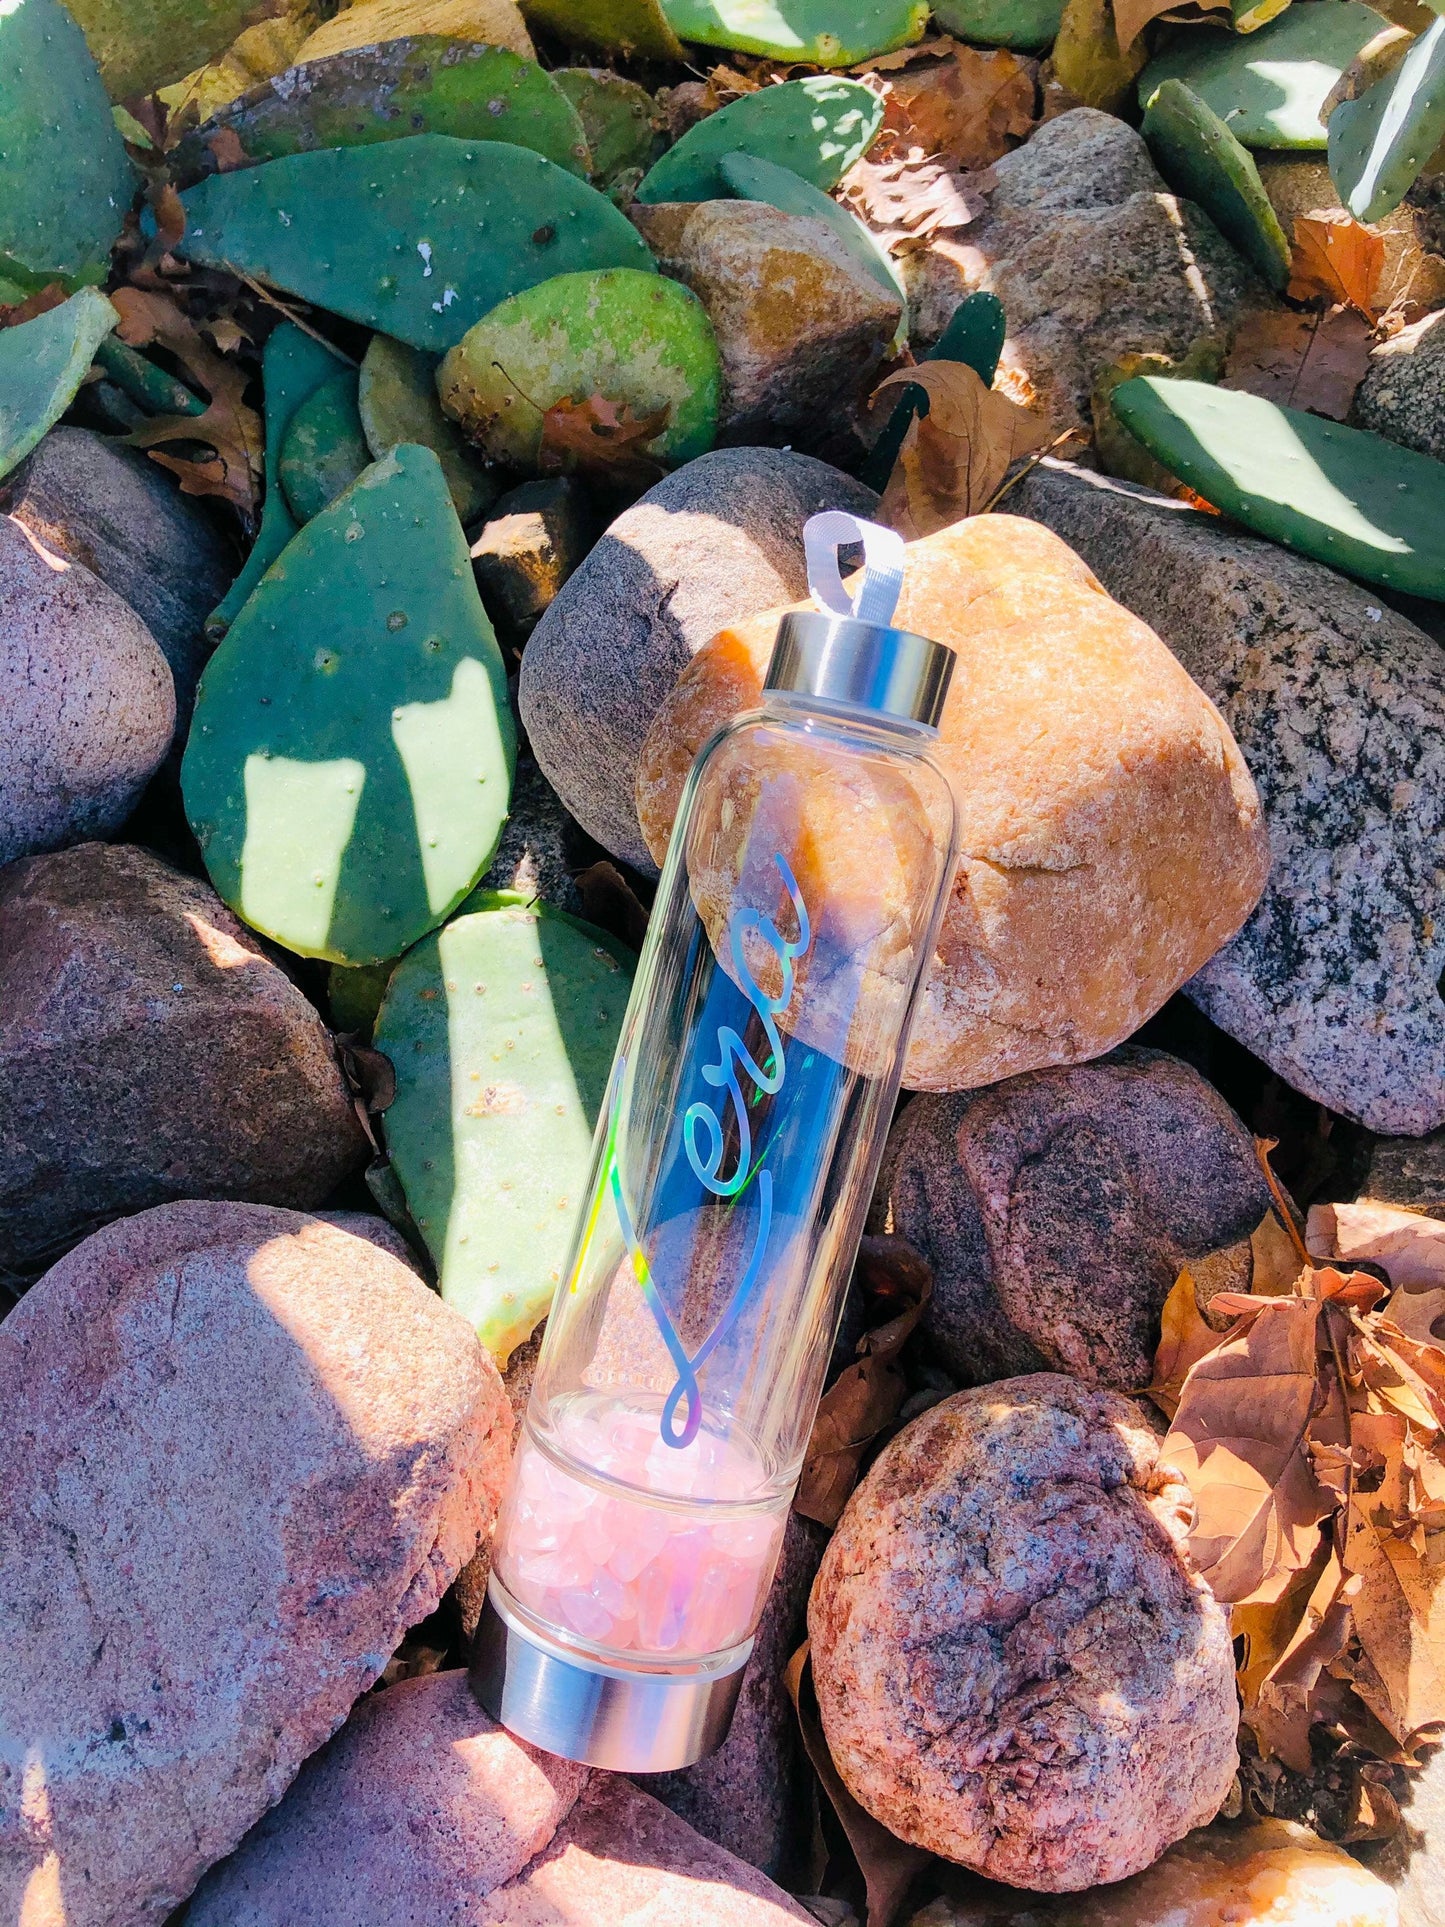 Rhinestone Tumbler Custom crystal infused water bottle Infused Healing Stones Gem Bottle